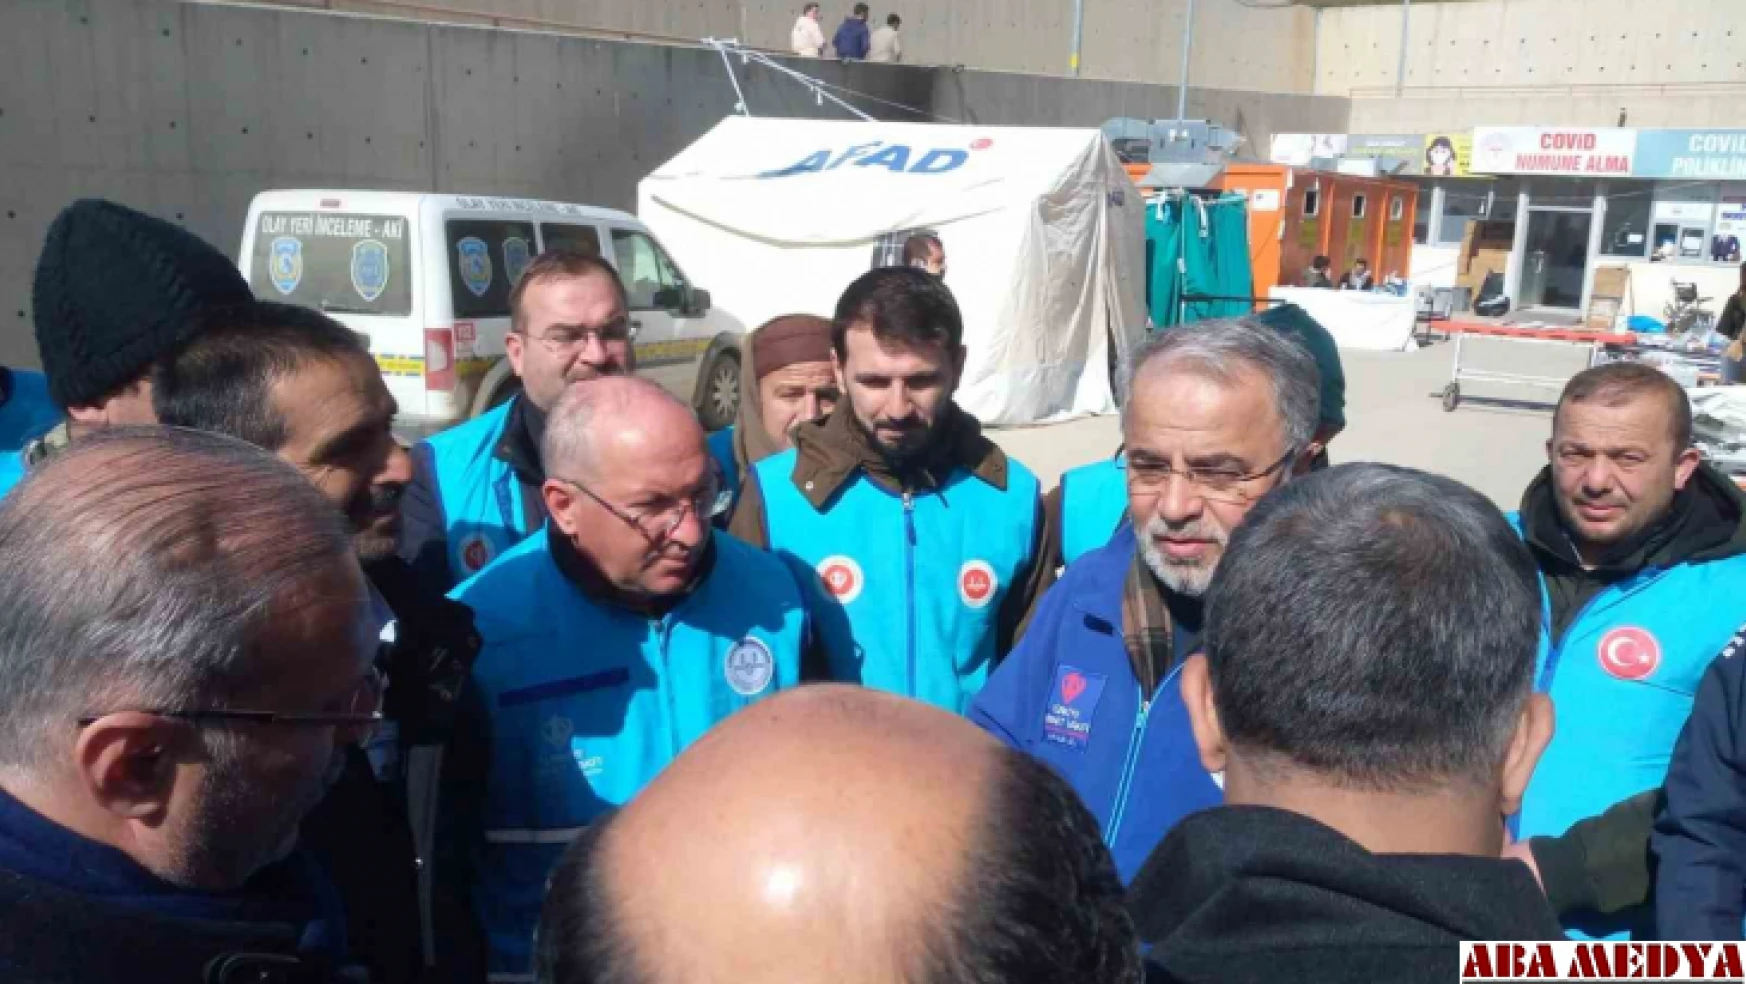 Hatay Kırıkhan'da bazı camilerde ezanlar ambulanstan okunuyor